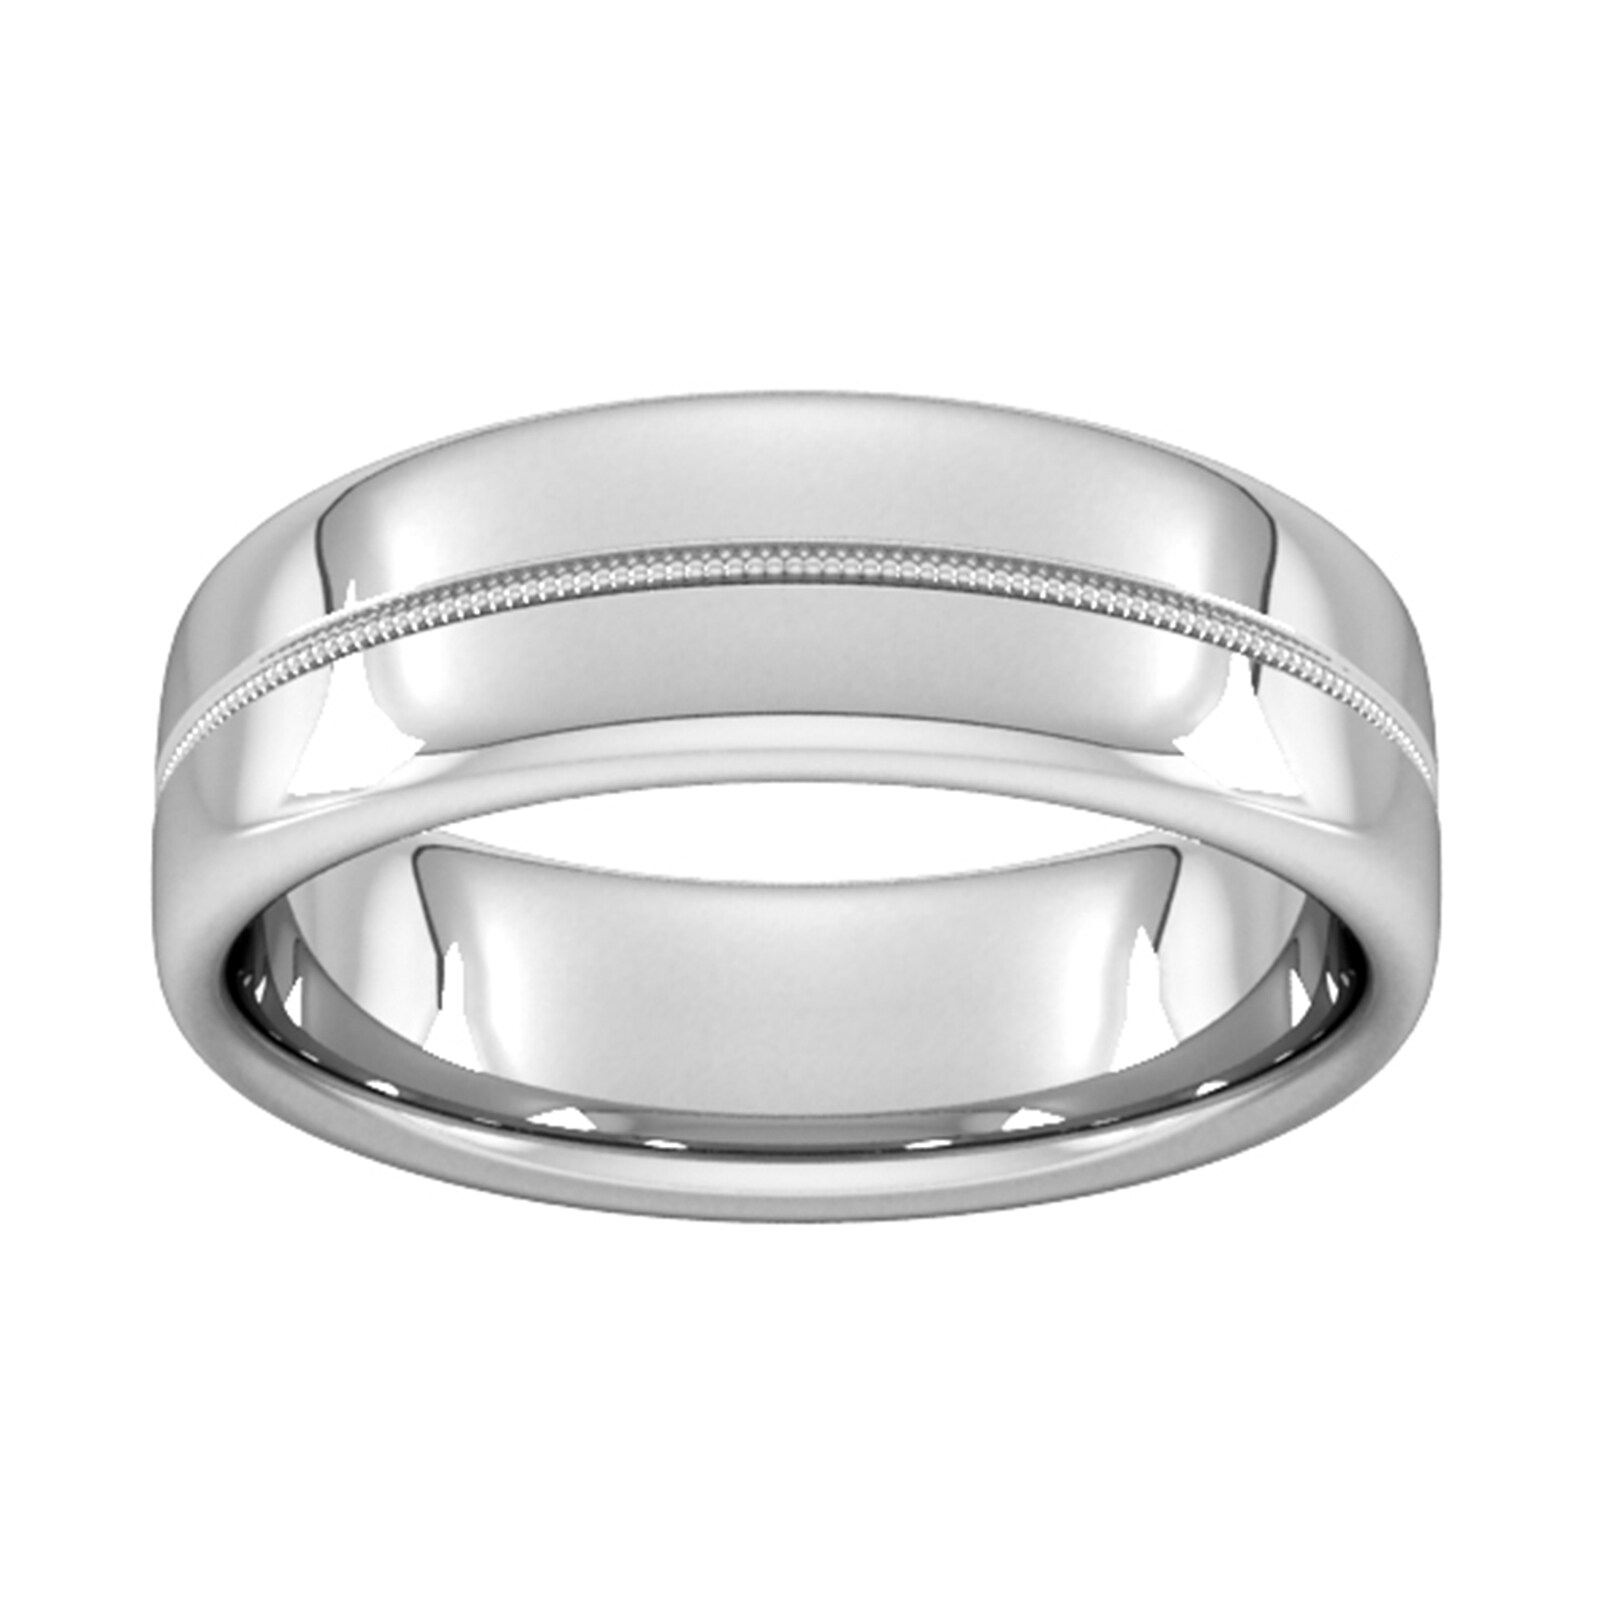 7mm Slight Court Standard Milgrain Centre Wedding Ring In 18 Carat White Gold - Ring Size P